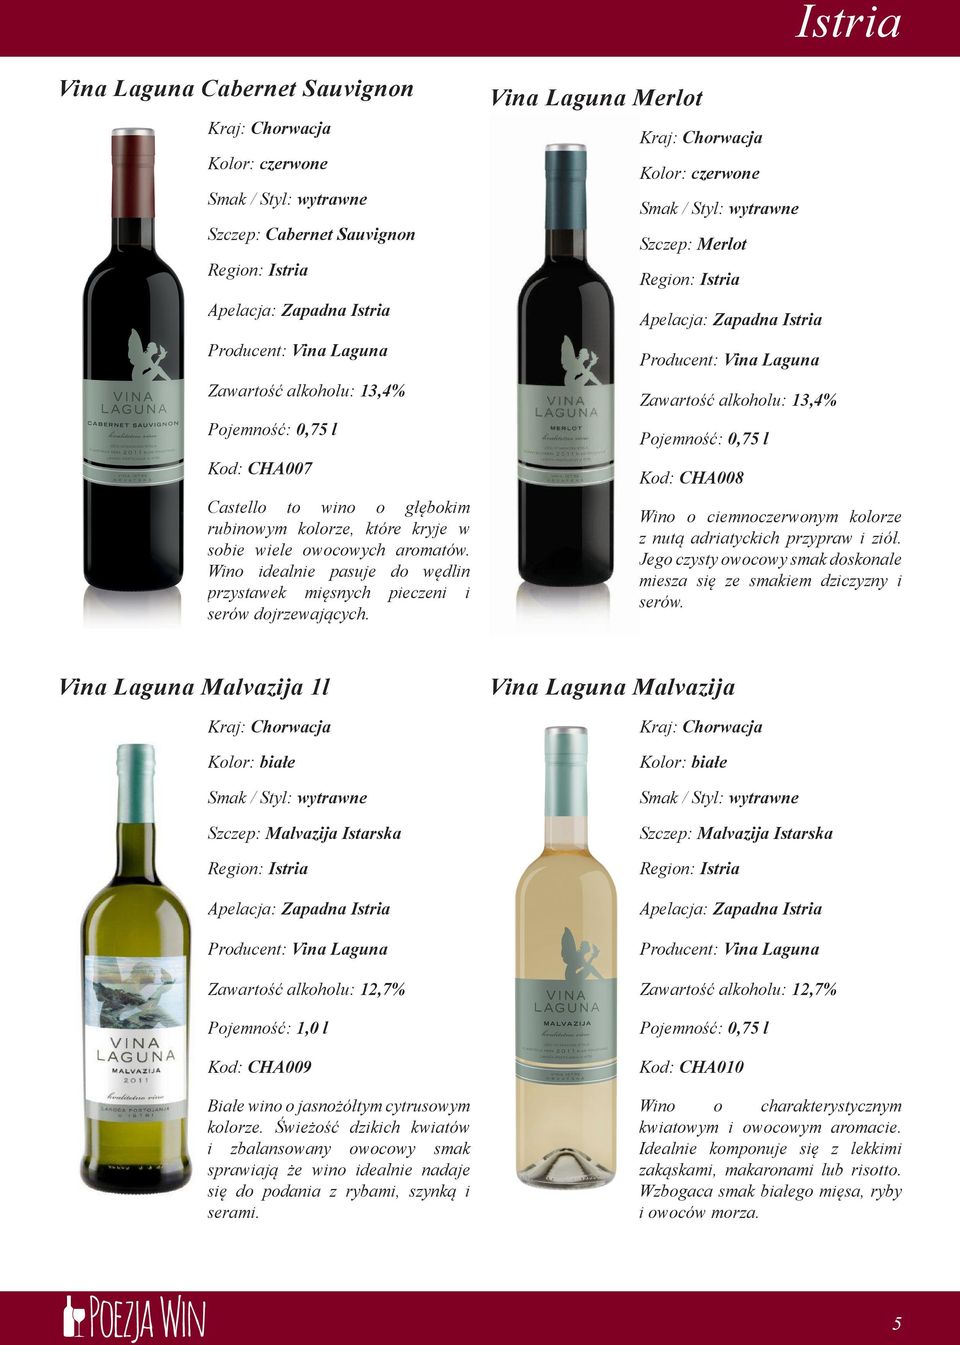 Vina Laguna Merlot Szczep: Merlot Zawartość alkoholu: 13,4% Kod: CHA008 Wino o ciemnoczerwonym kolorze z nutą adriatyckich przypraw i ziół.